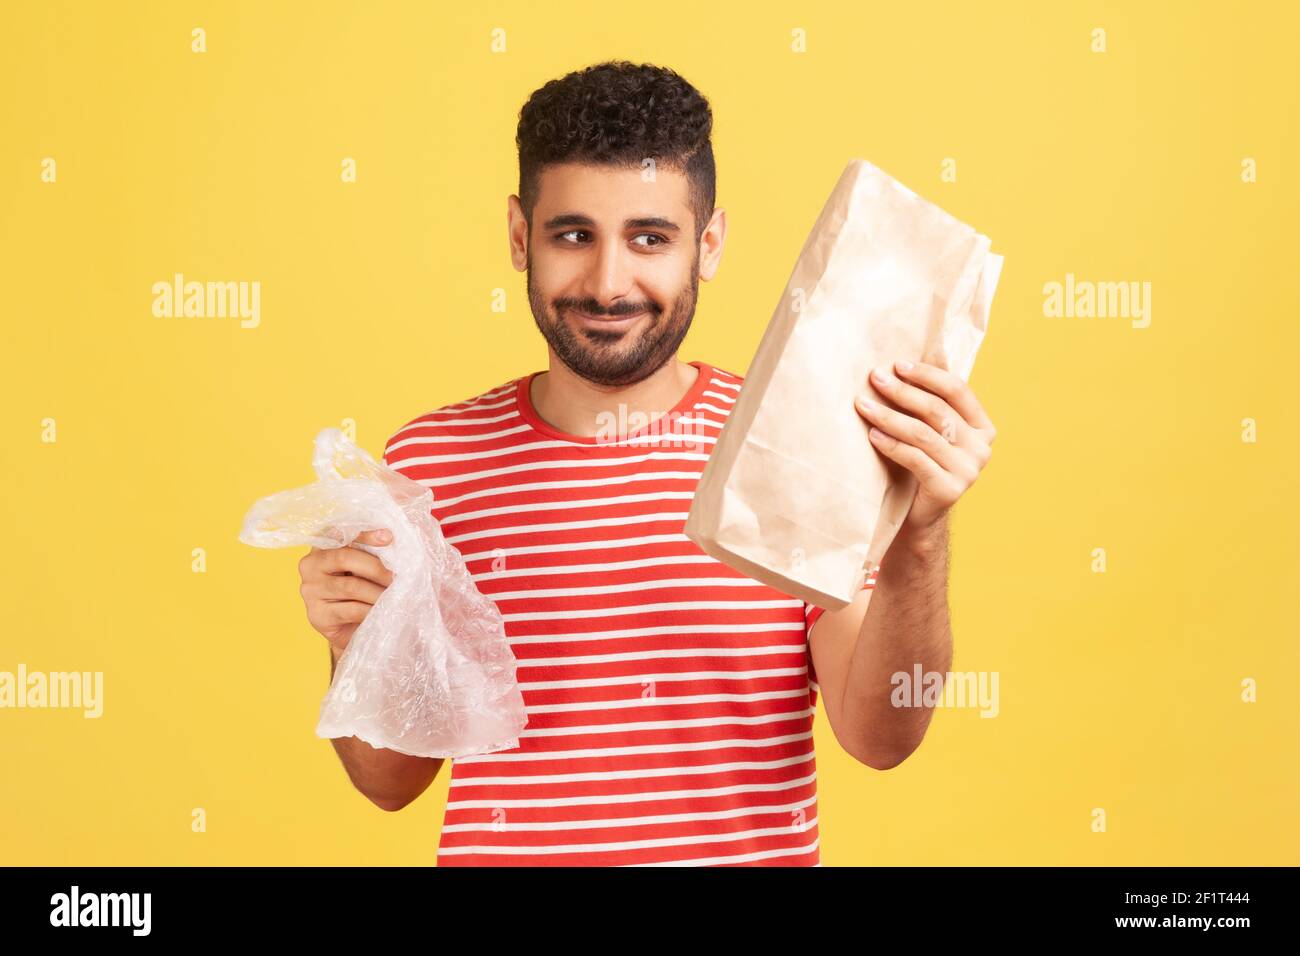 Felice uomo allegro con barba in t-shirt a righe rosse che tiene due borse in mano, guardando la borsa di carta con sorriso, rifiutando di usare la plastica. studi interni Foto Stock